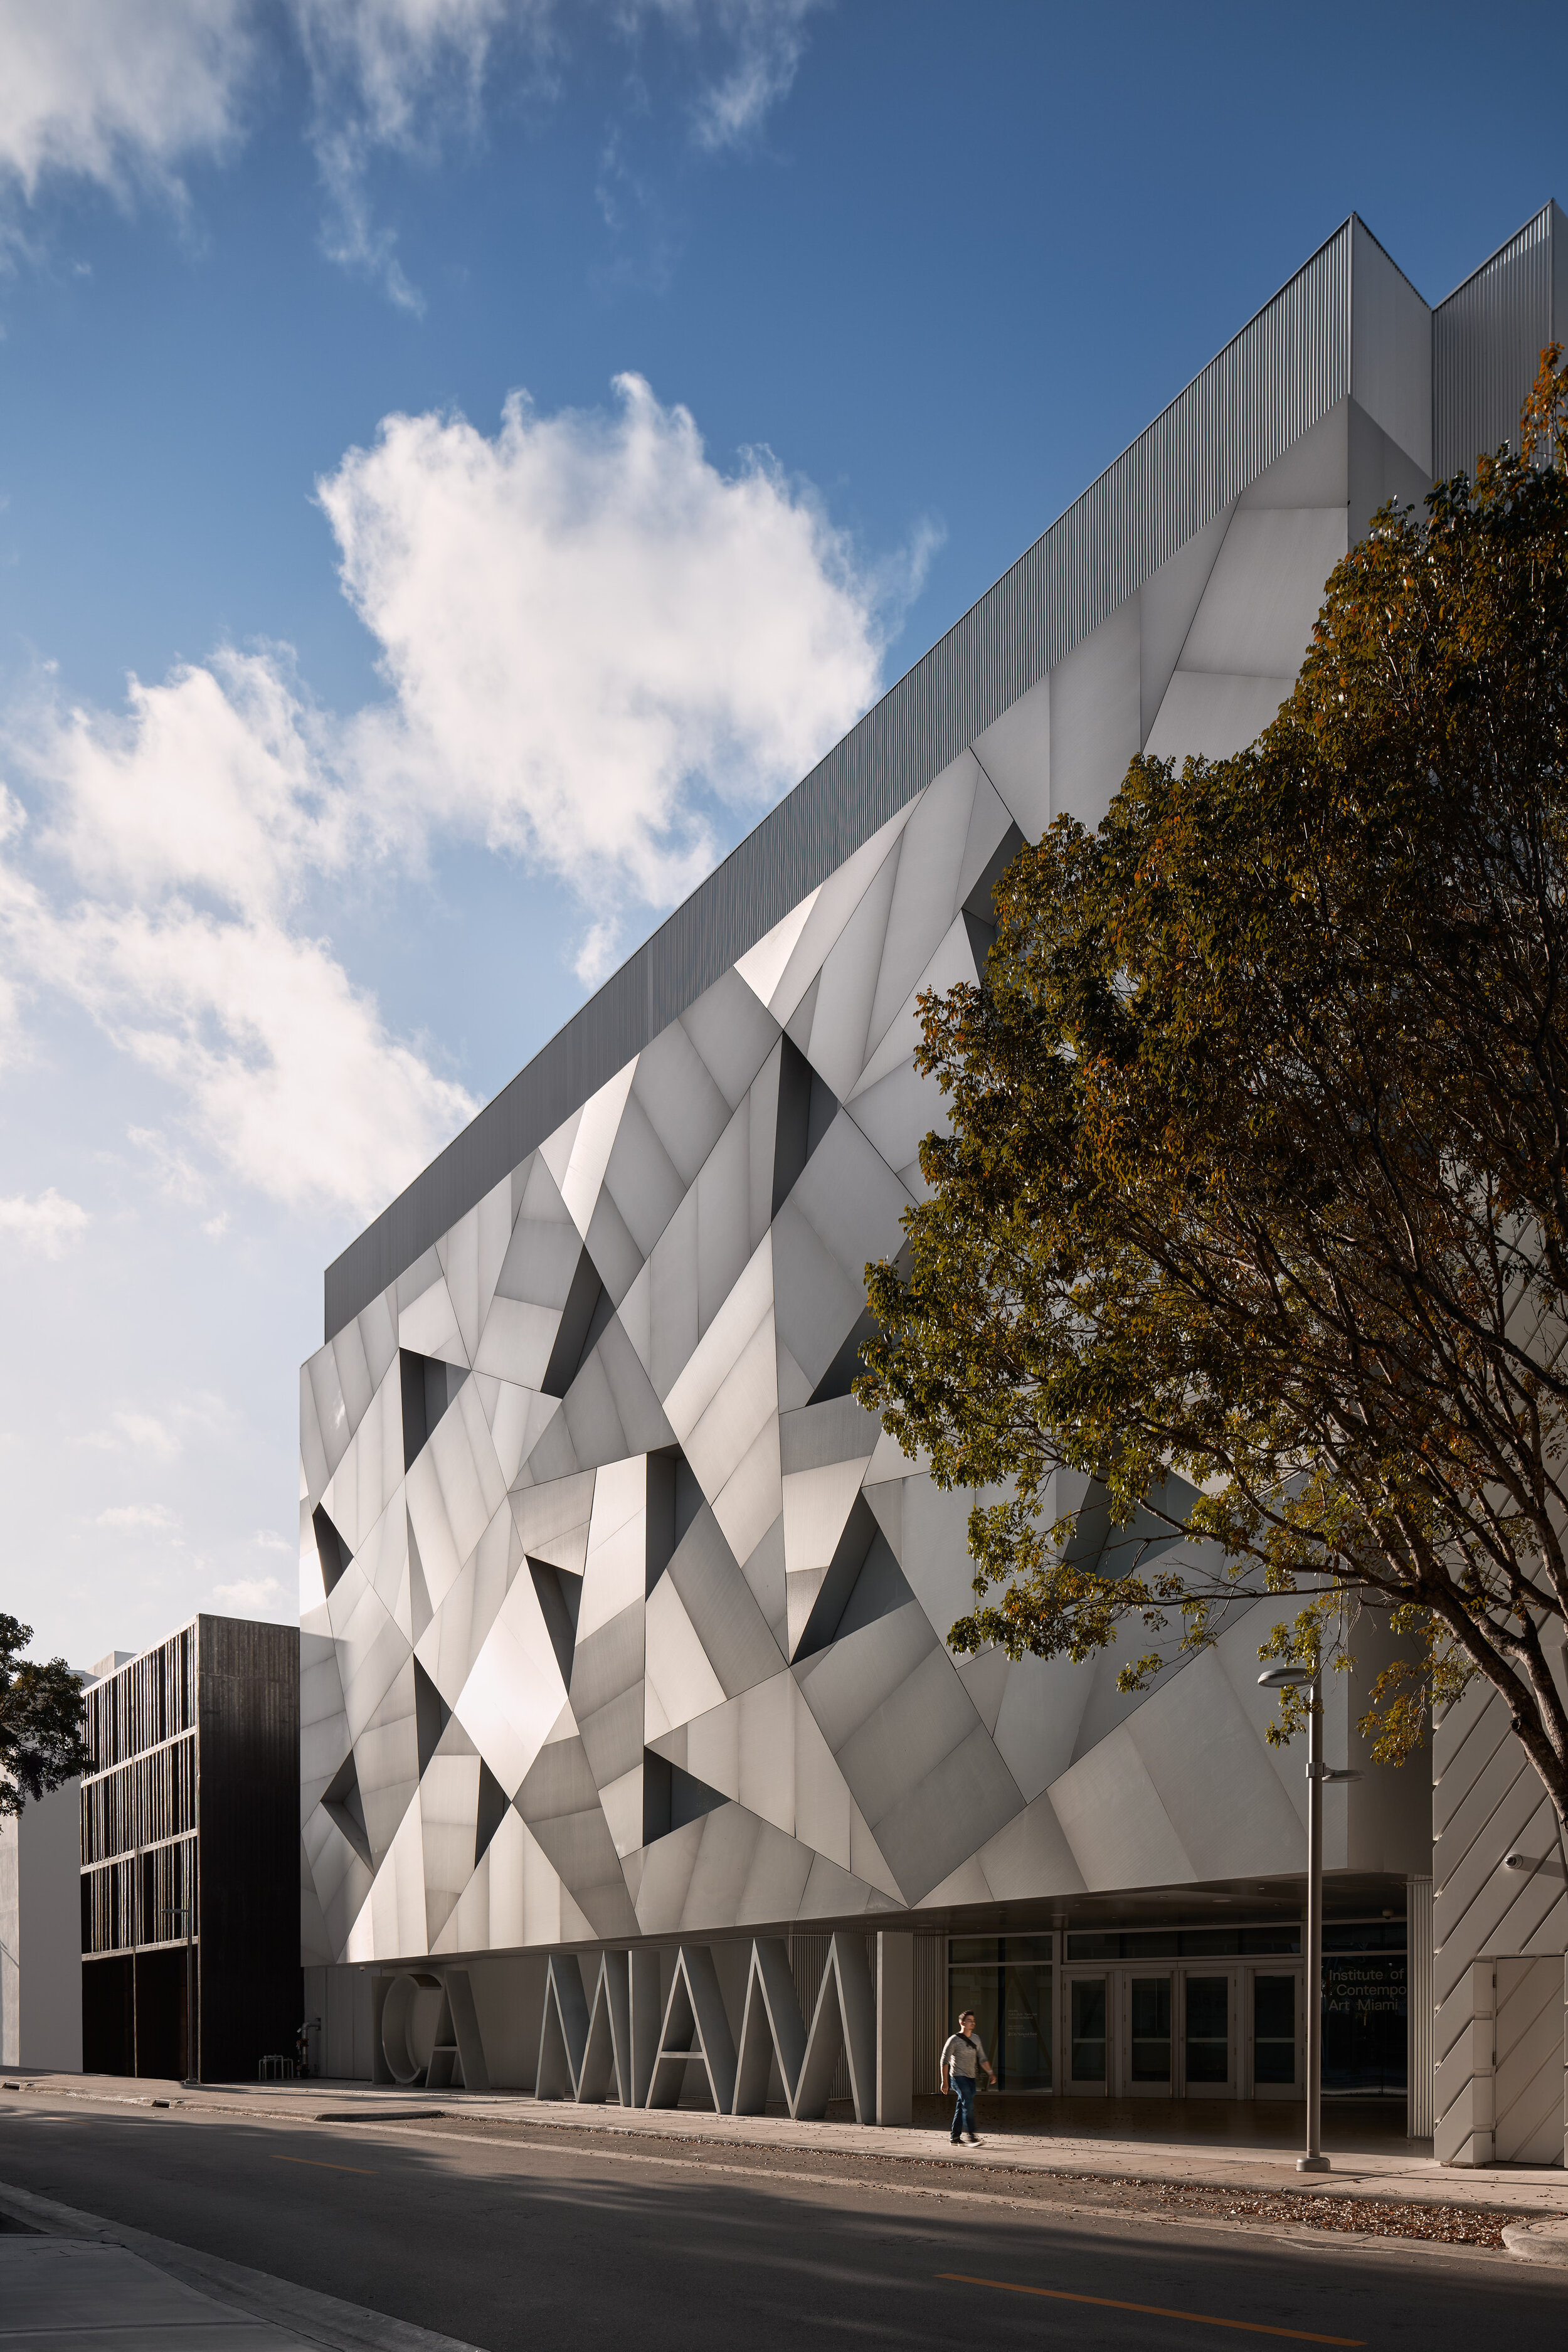 Institute of Contemporary Art: Miami, FL - Aranguren + Gallegos Architects